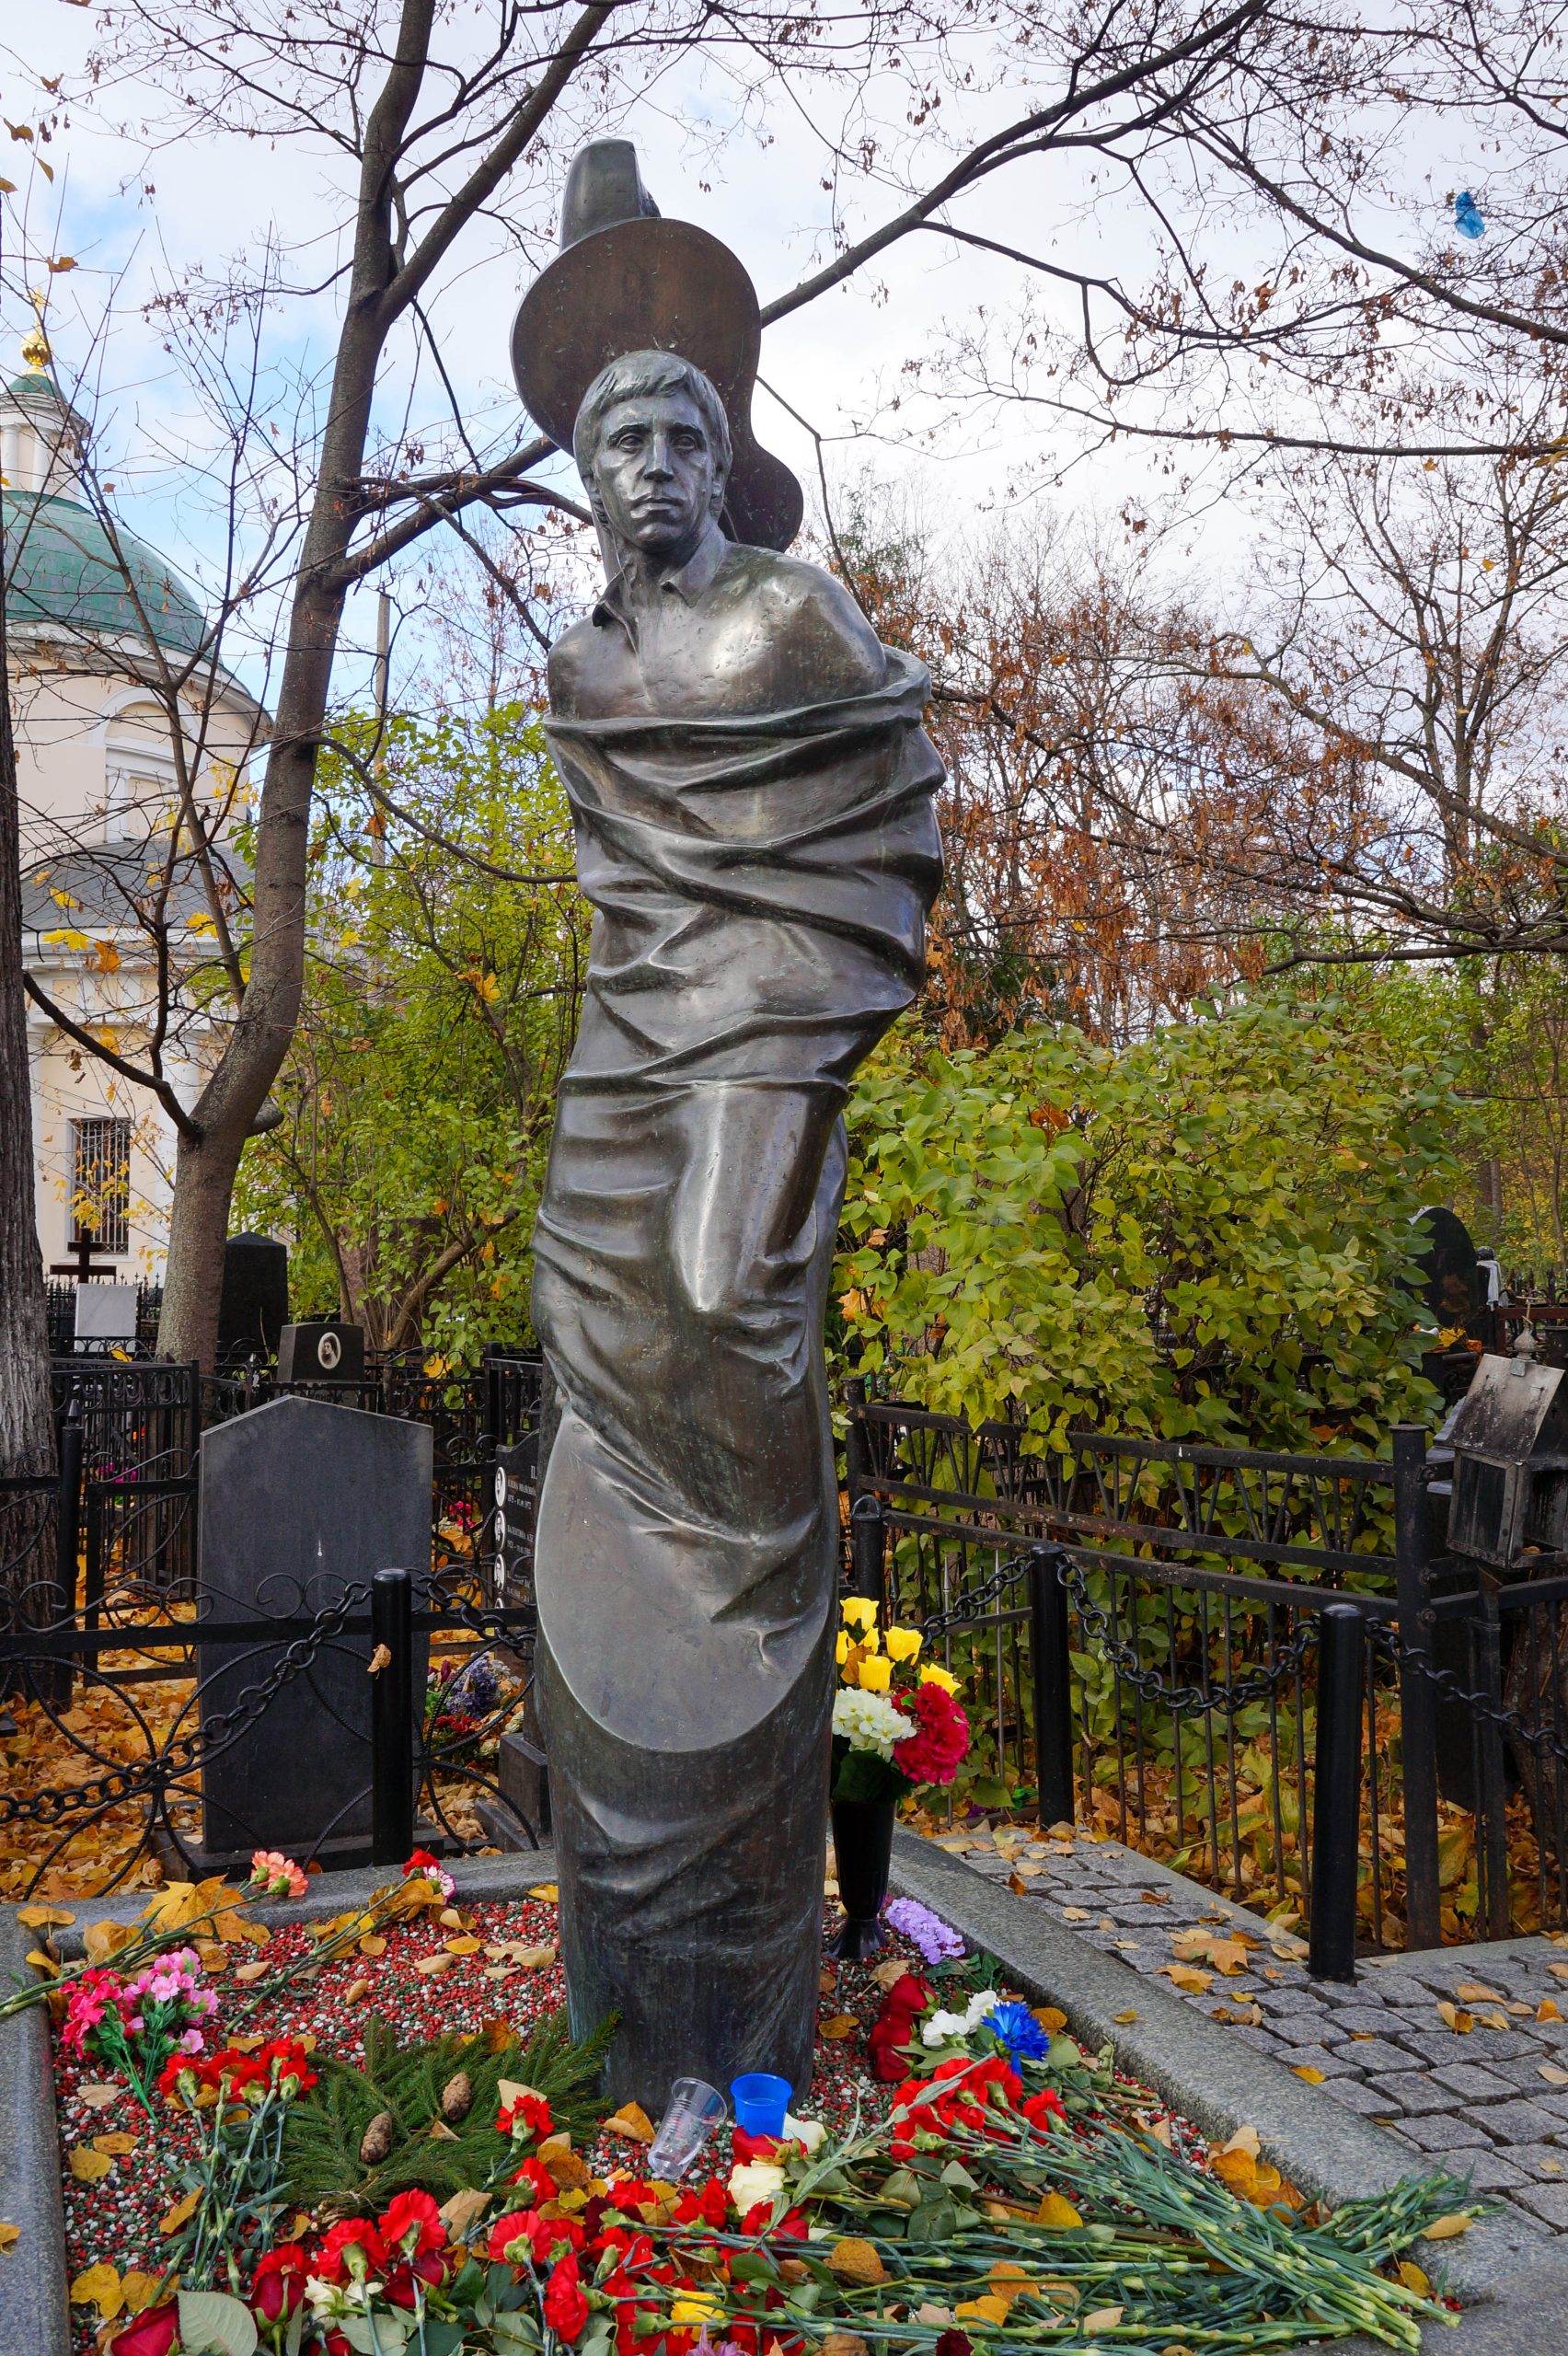 Могила Высоцкого на Ваганьковском кладбище